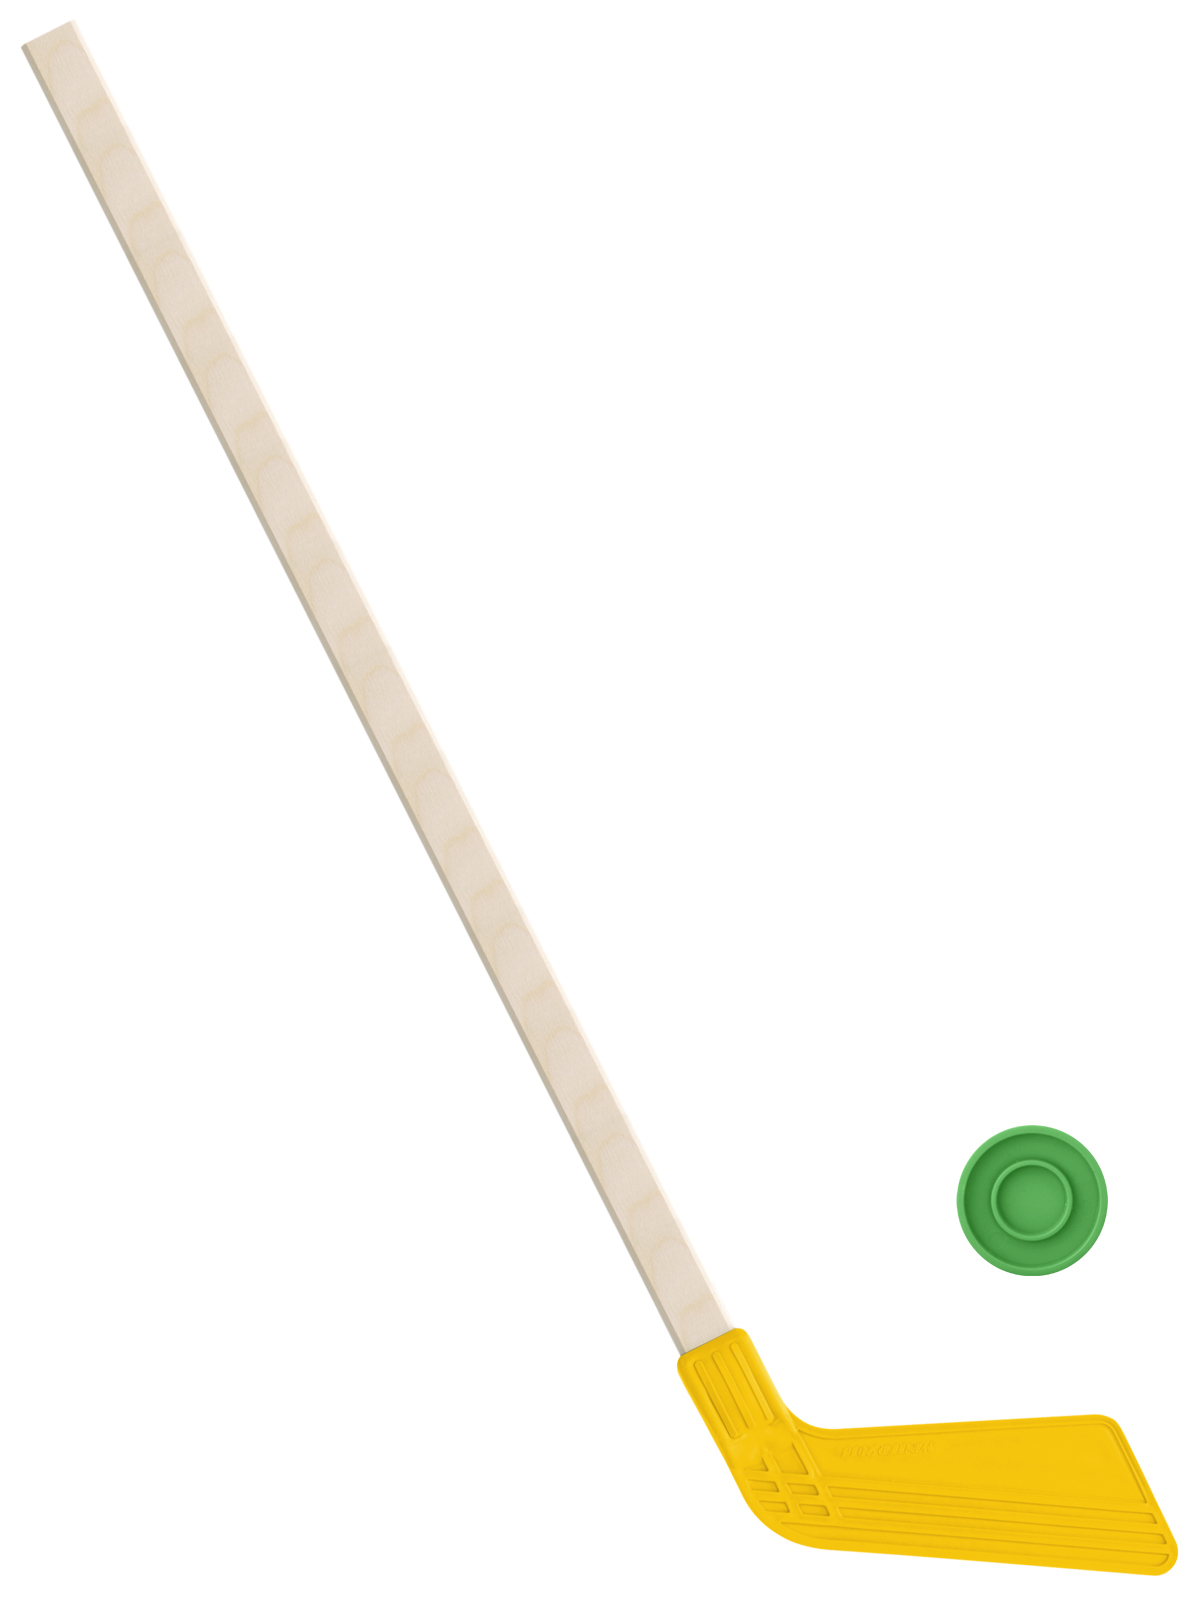 фото Детский хоккейный набор задира-плюс, клюшка хоккейная 80 см (желтая)+шайба